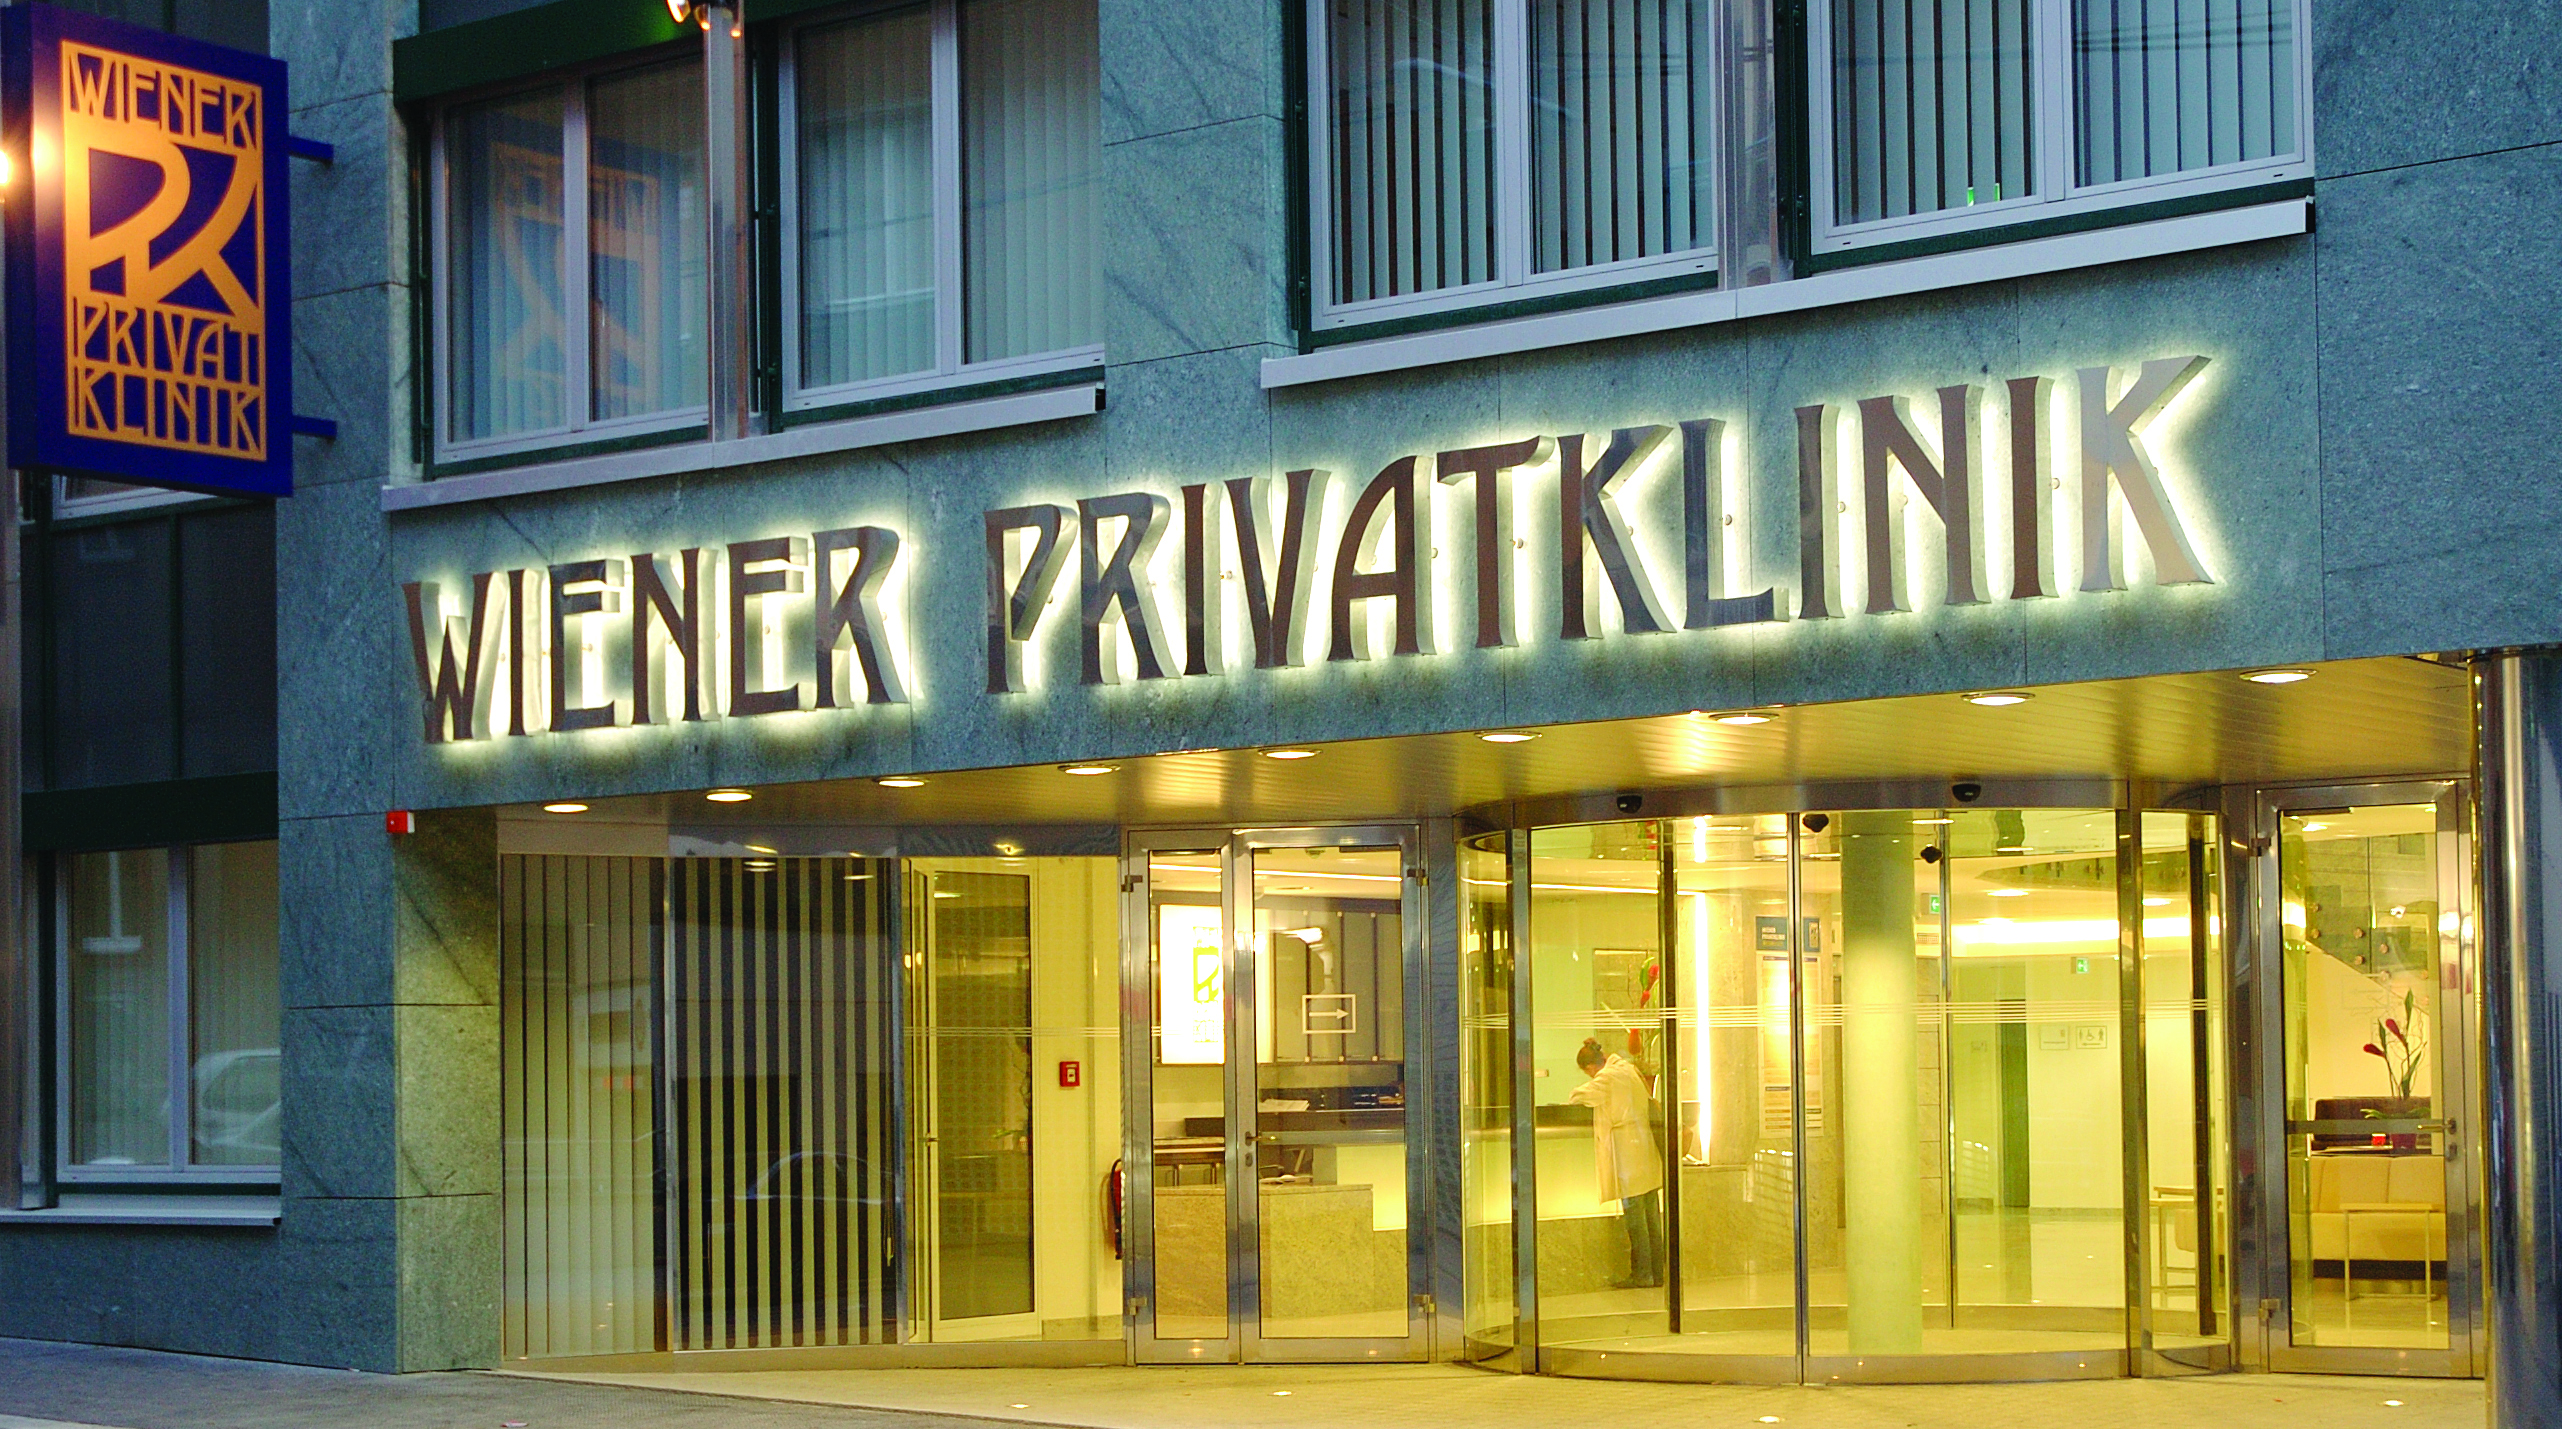 Wiener Privatklinik